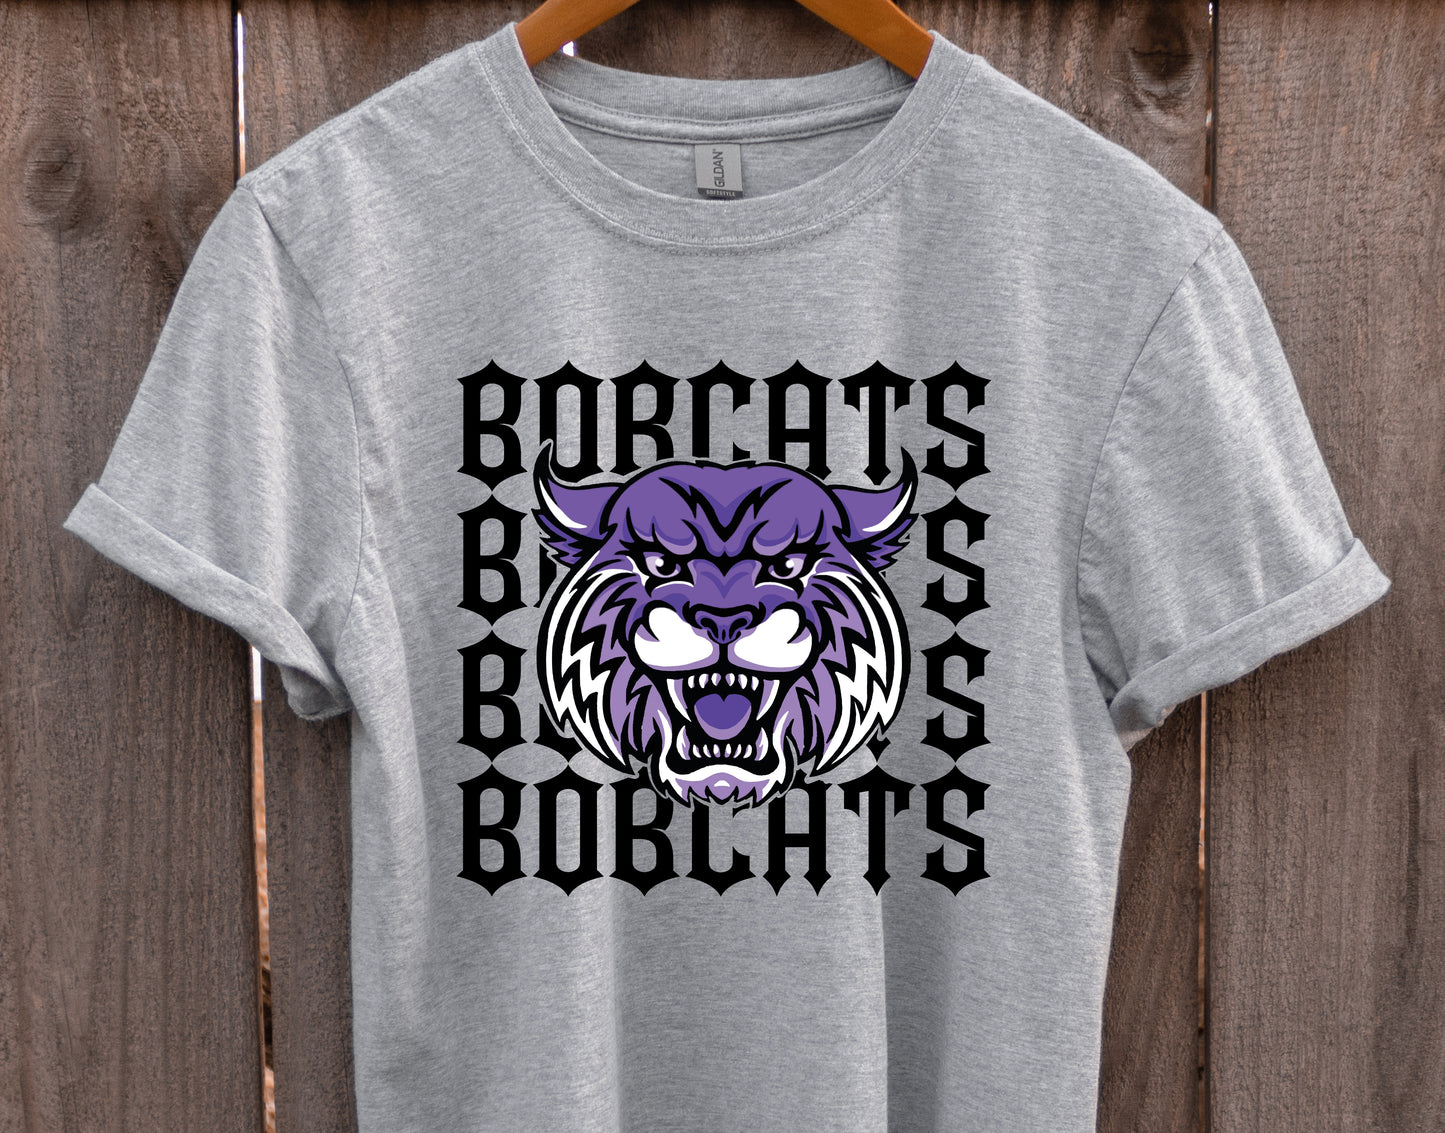 Bobcats Repeating Mascot Graphic Tee